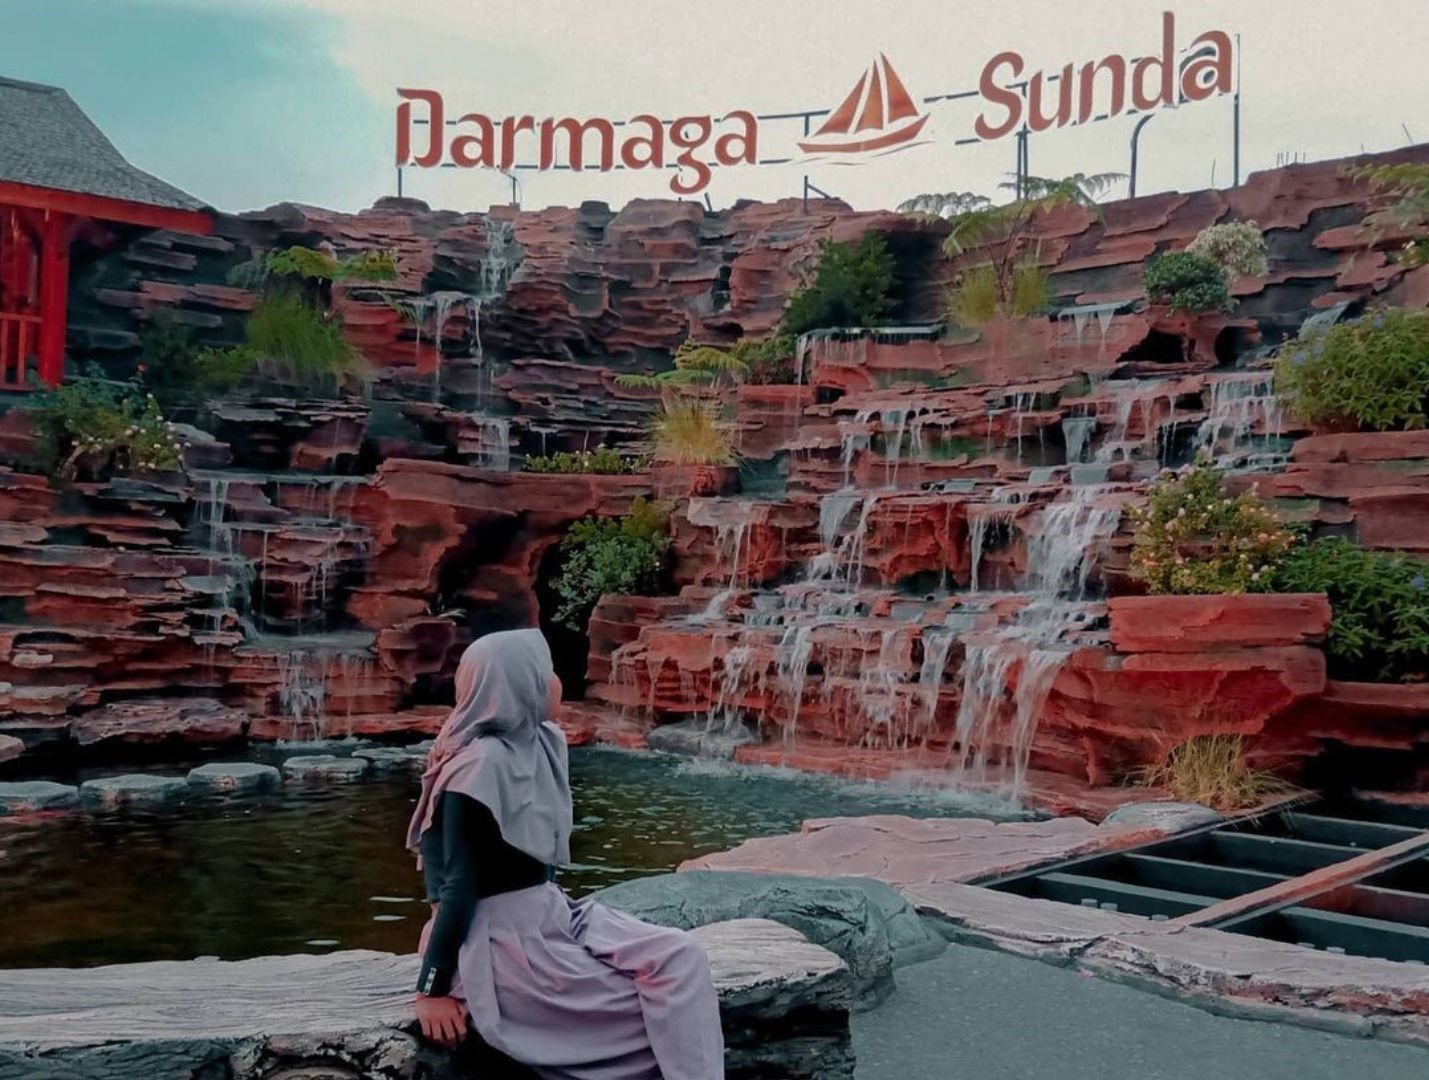 Darmaga Sunda termasuk tempat munggahan yang hits karena tempatnya instagramable./ Instagram/ jayskln